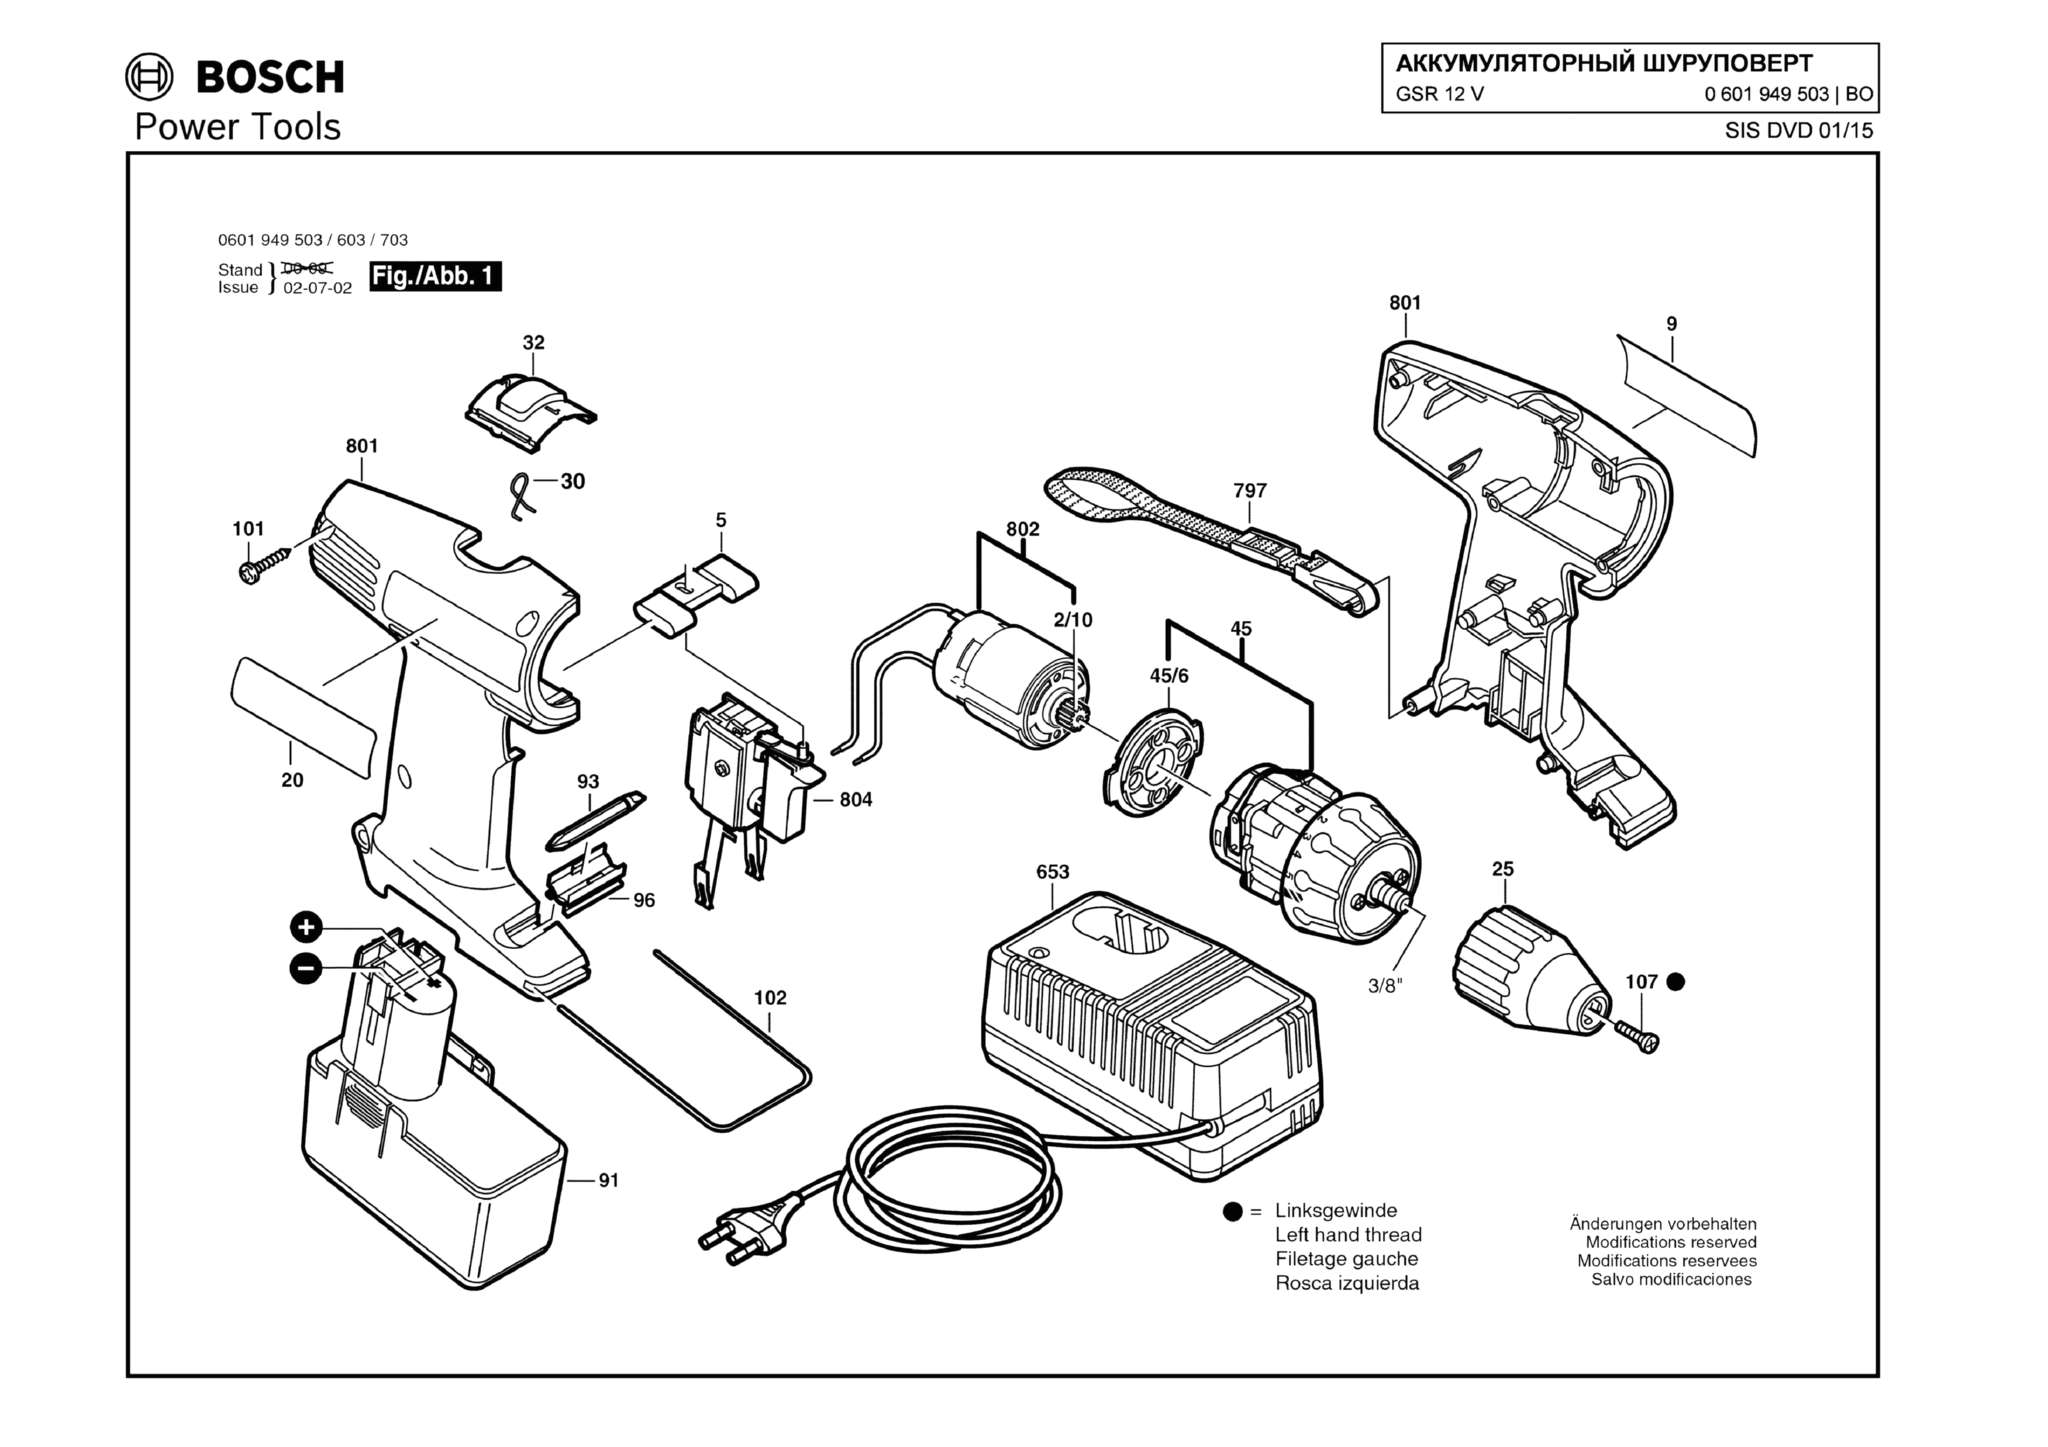 Запчасти, схема и деталировка Bosch GSR 12 V (ТИП 0601949503)